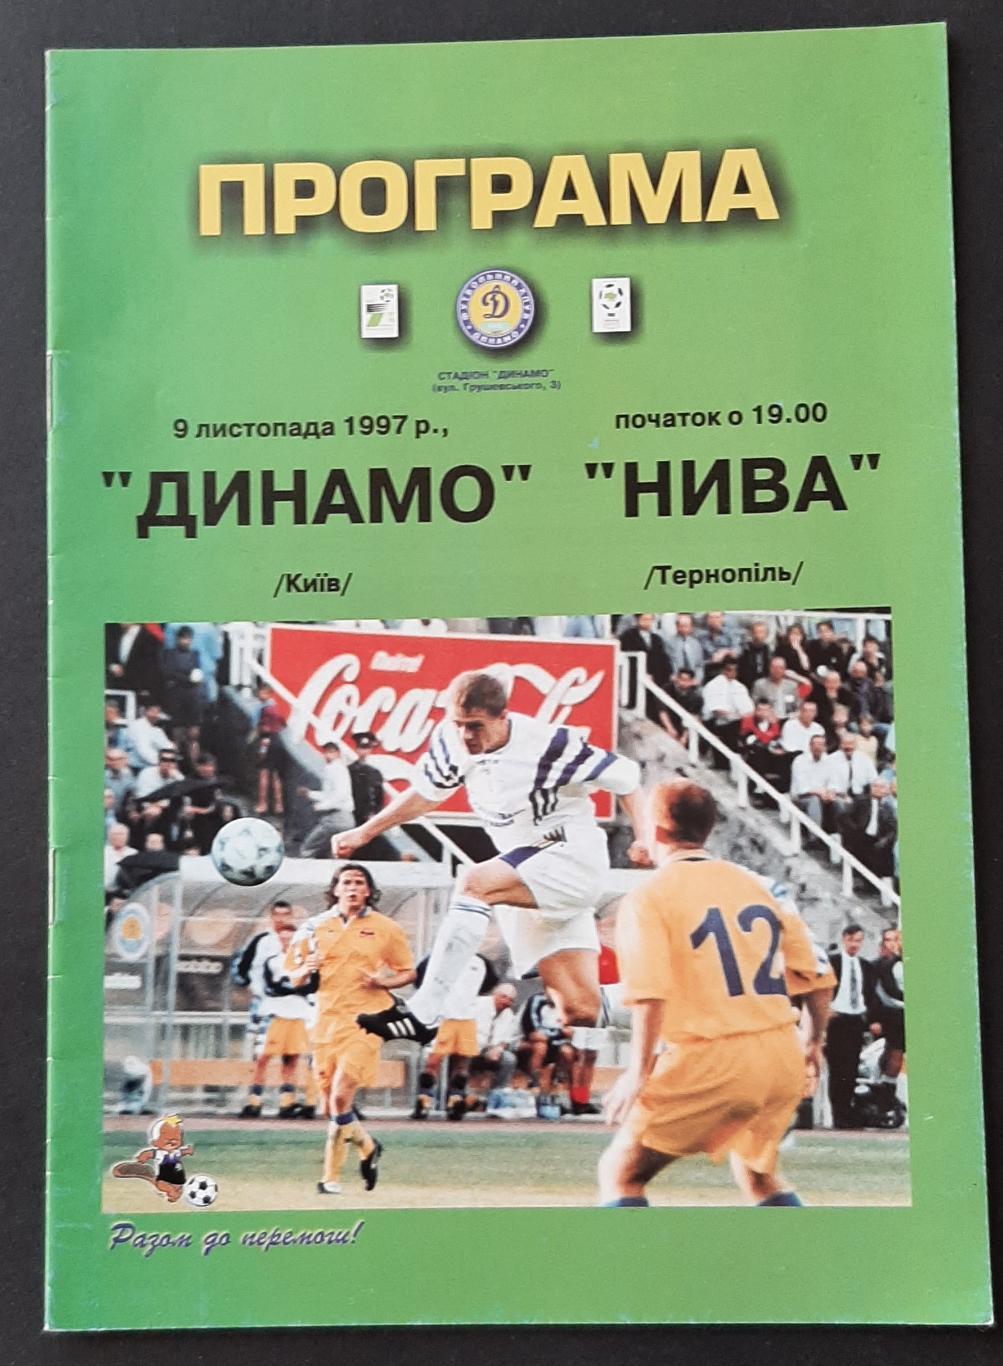 Динамо Київ - Нива Тернопіль 09.11.1997